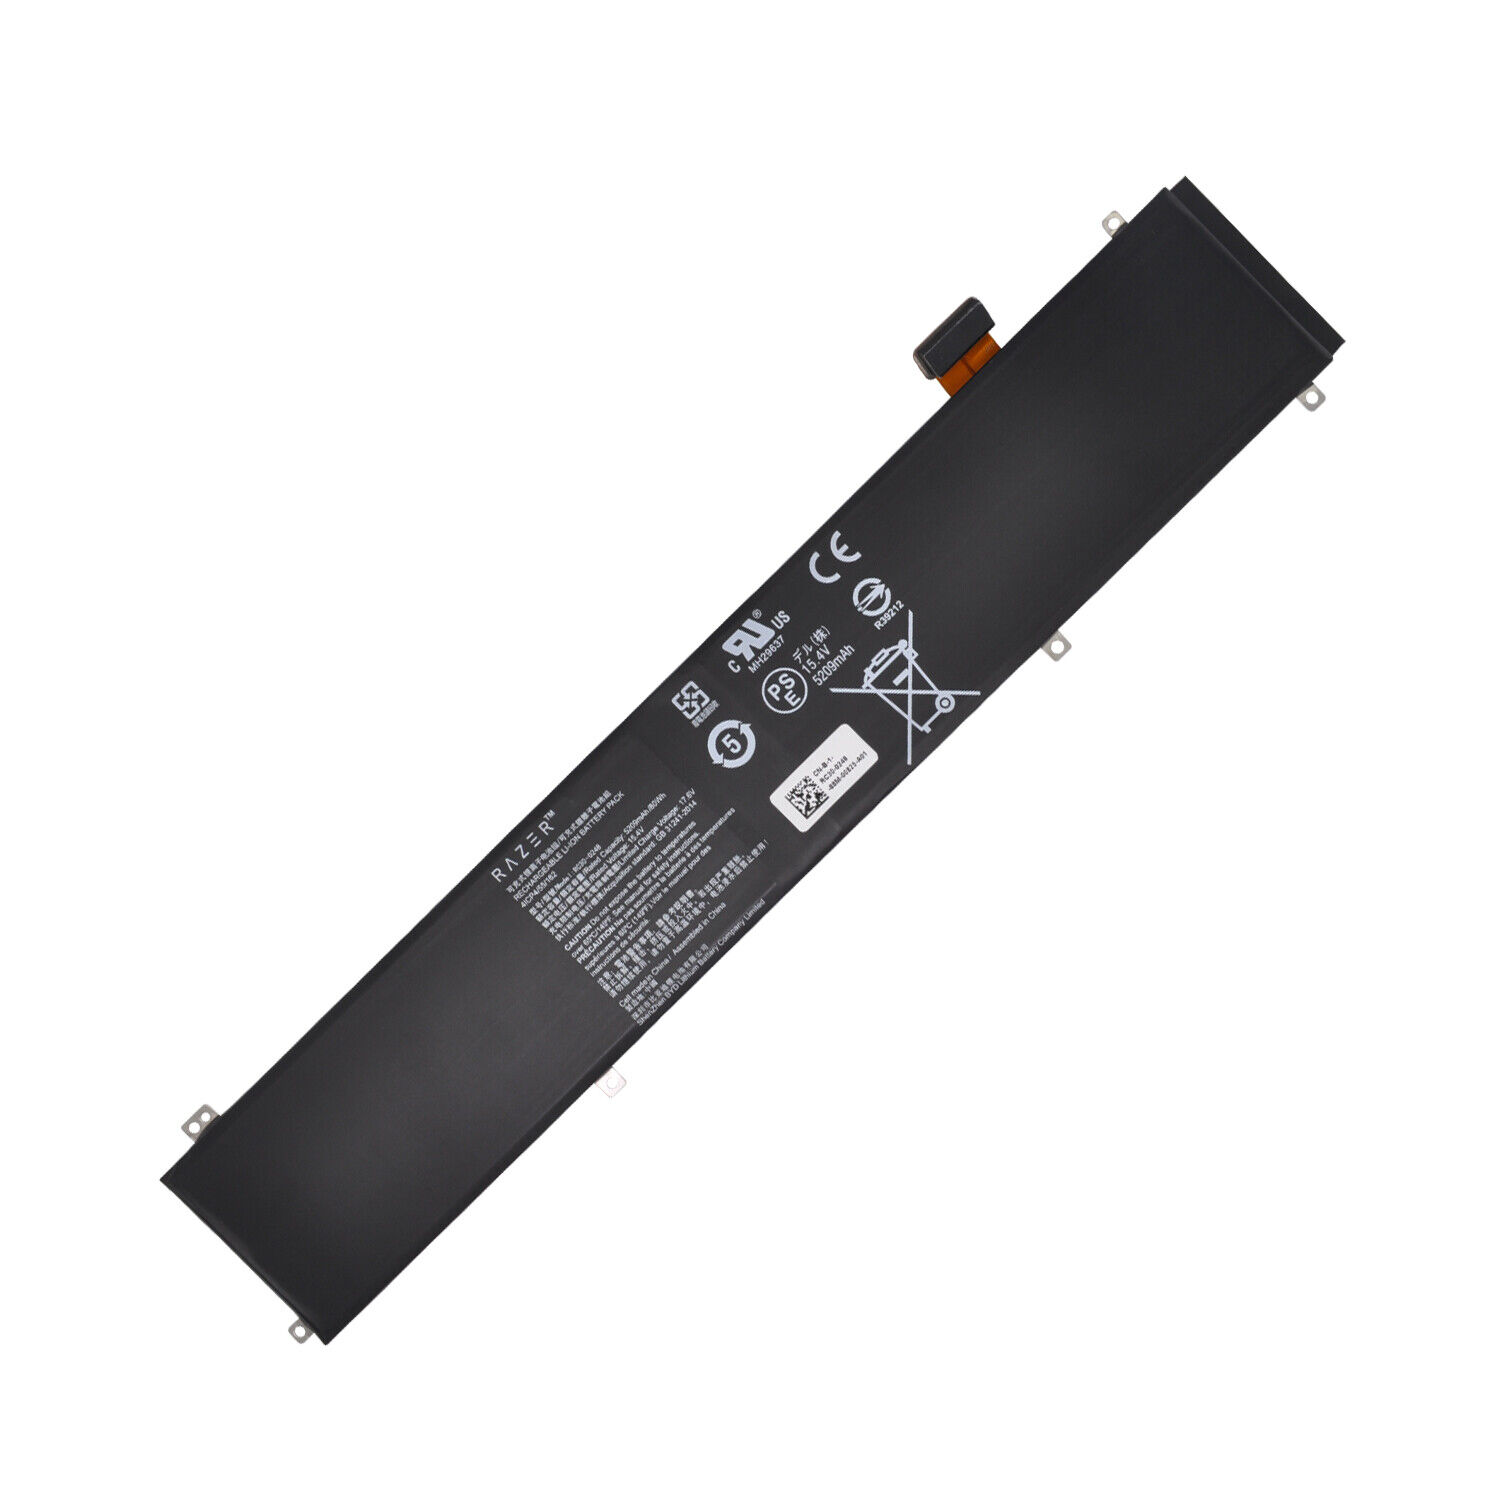 Genuine battery for Razer RZ09-02886 RZ09-02887 RZ09-02888 RZ09-03017 RZ09-03018